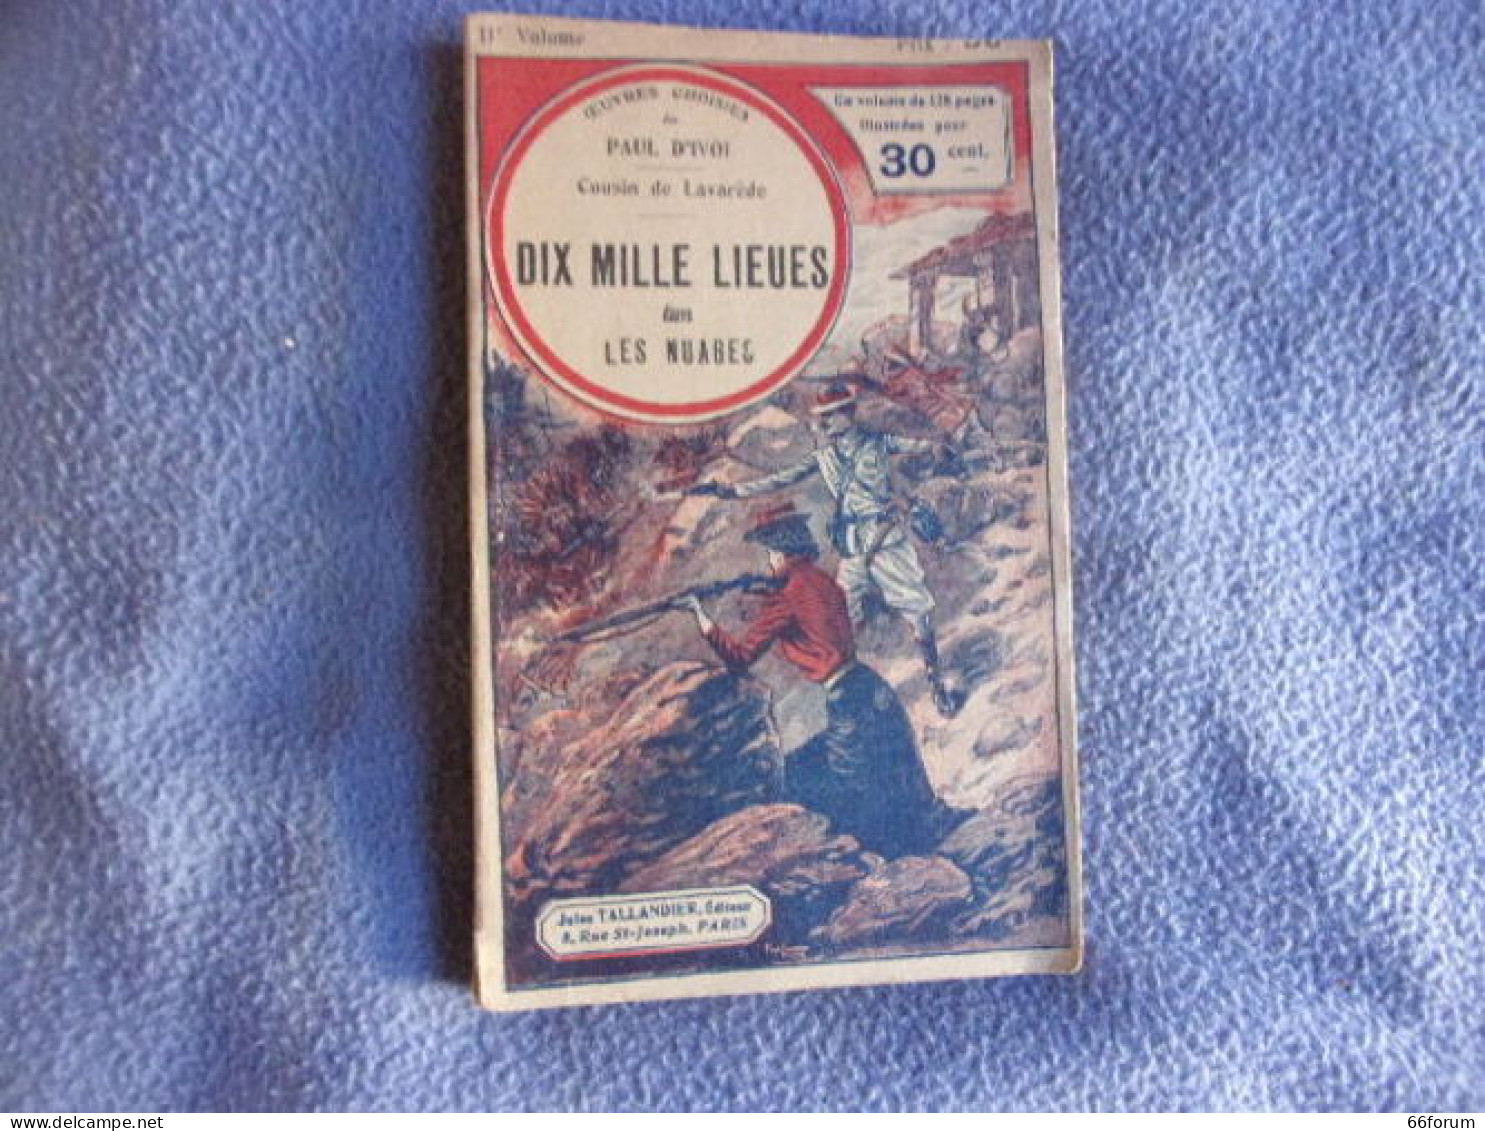 Cousin De La Varède- Dix Mille Lieues Dans Les Nuages - 1801-1900